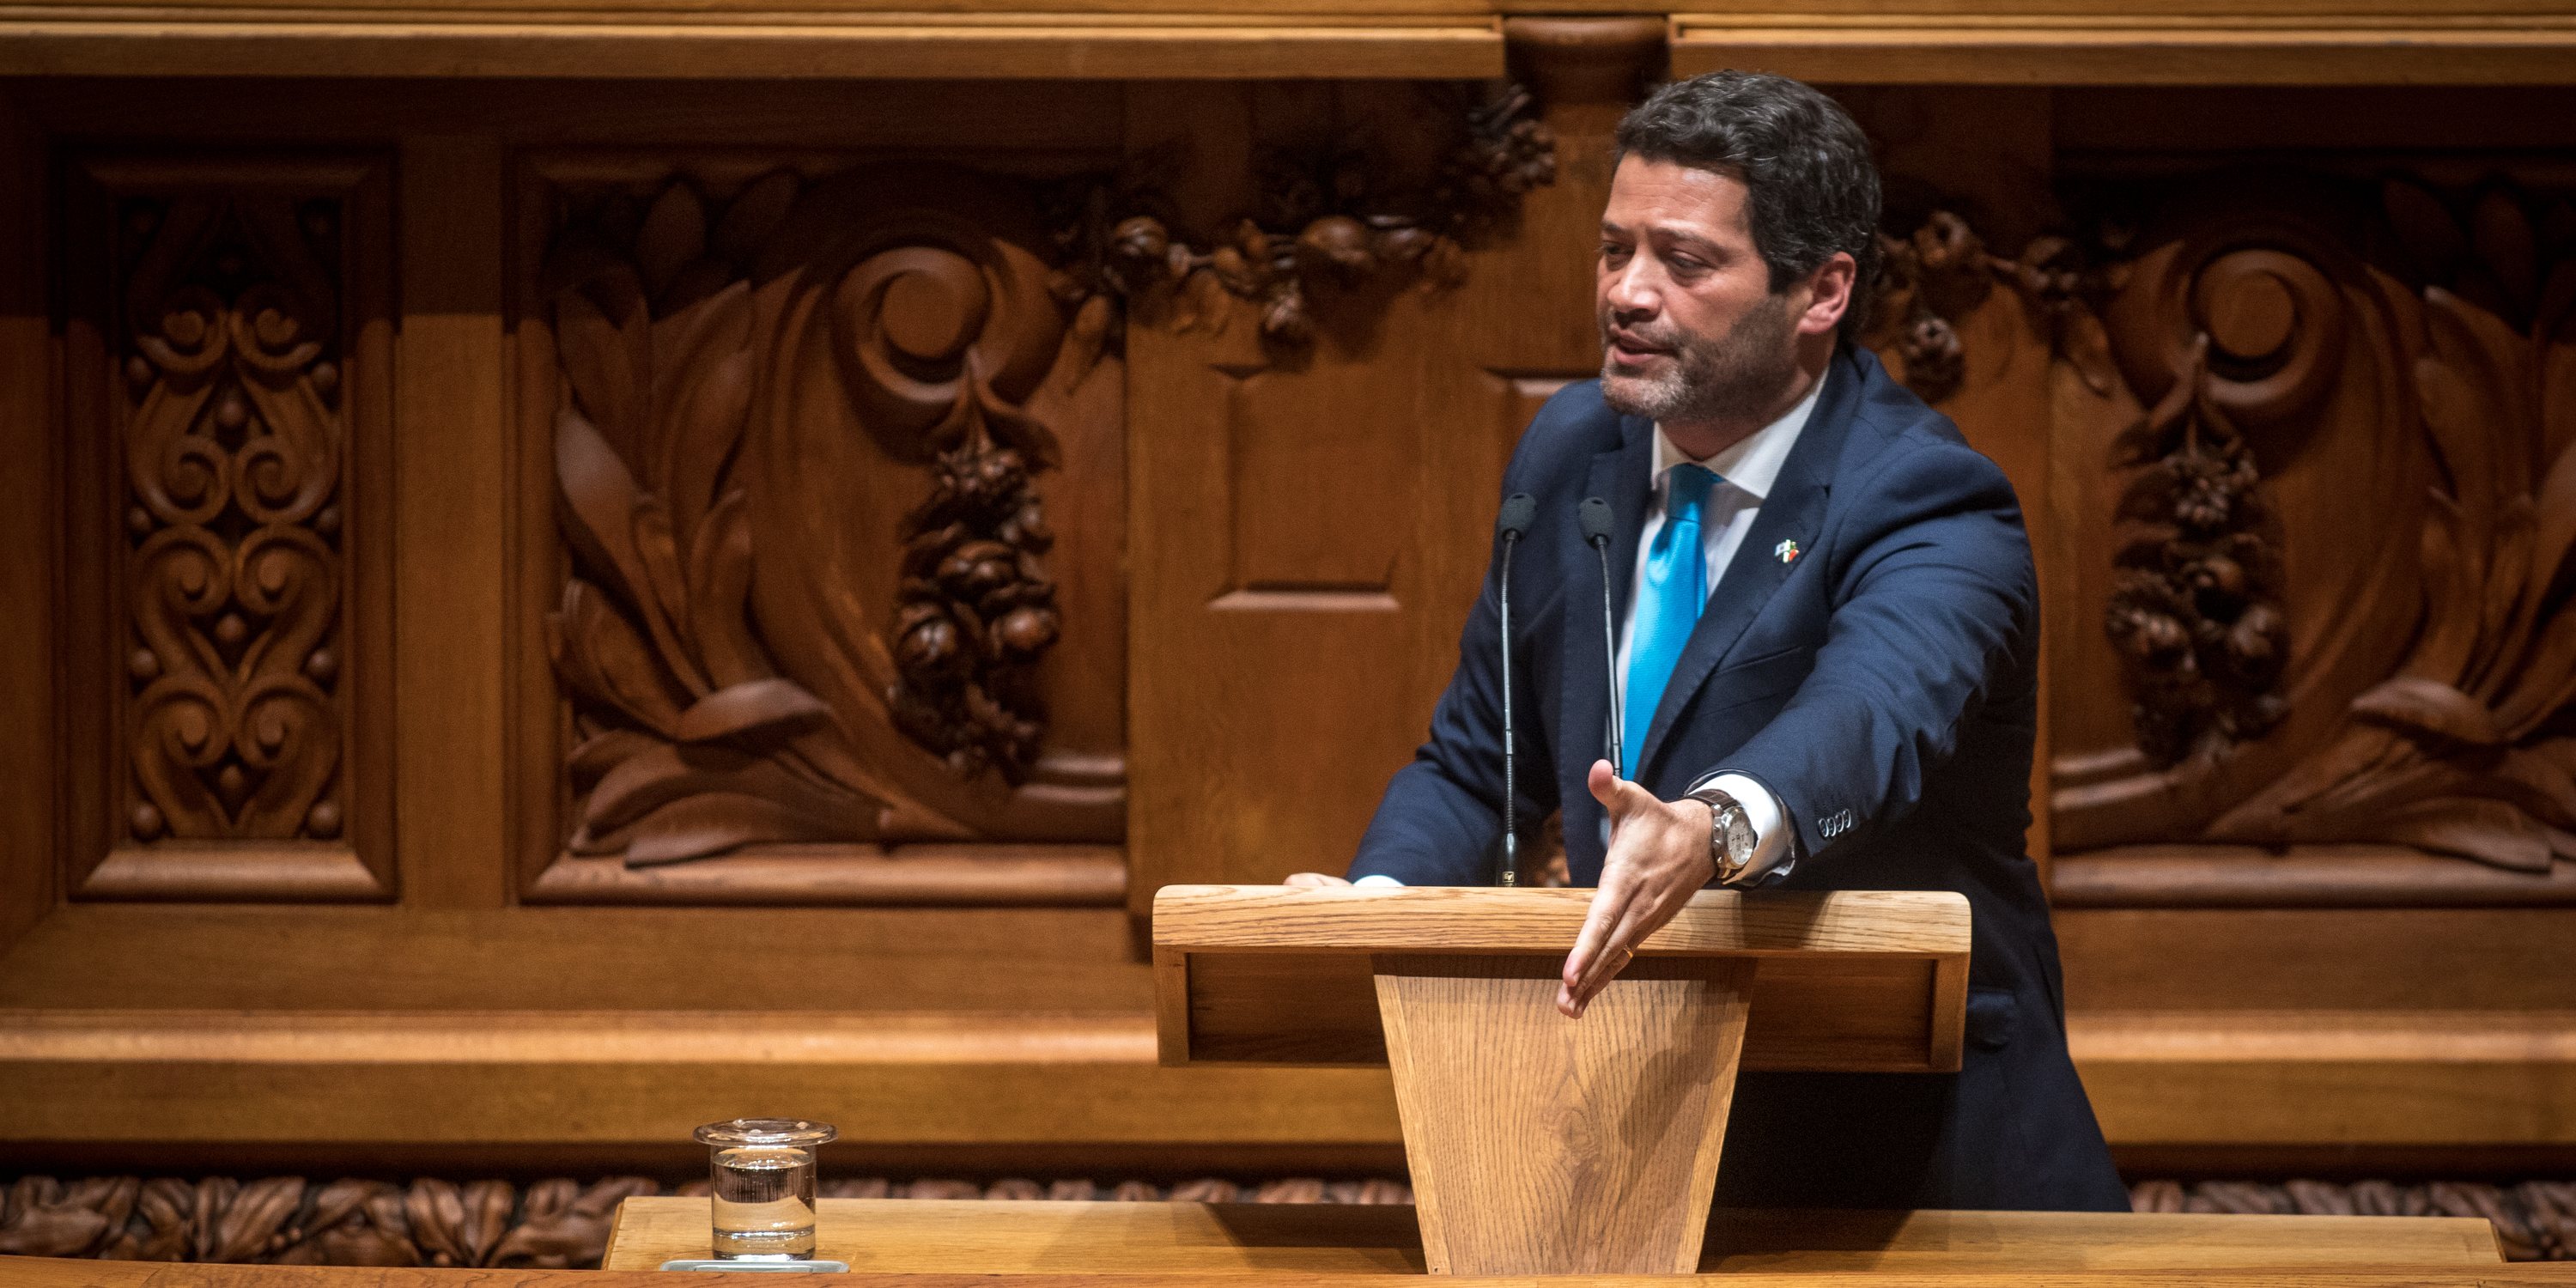 Segundo dia de debate e votação do Orçamento do Estado (OE) para 2022, na Assembleia da República. André Ventura, líder do CHEGA Lisboa, 29 de Abril de 2022 TOMÁS SILVA/OBSERVADOR